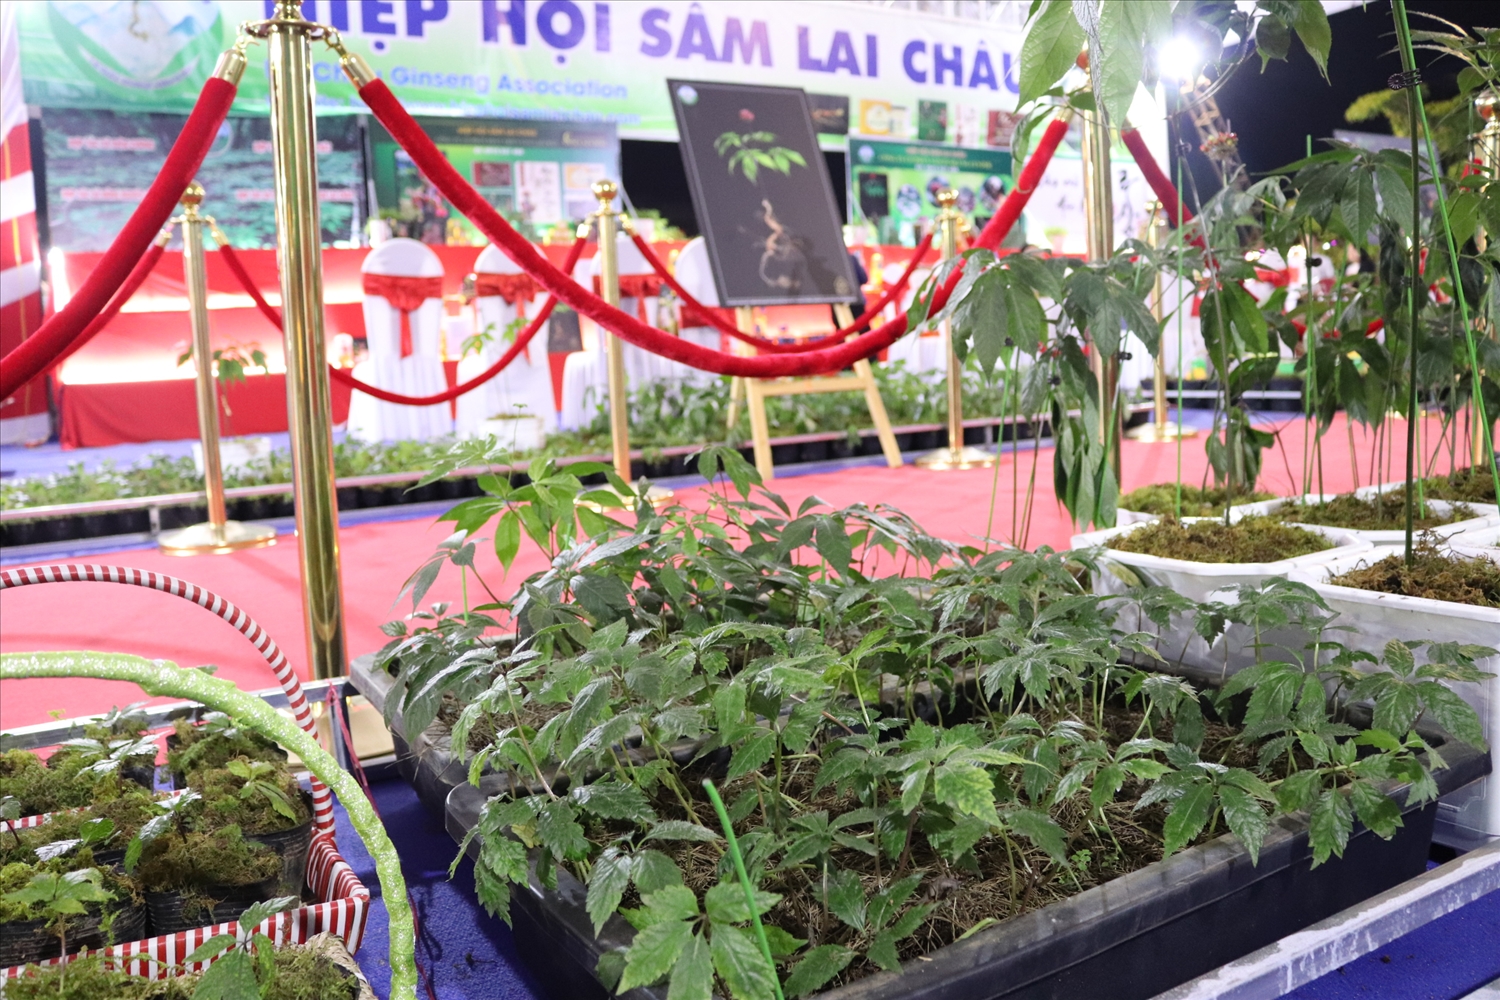 Cây sâm nhỏ được bày bán trong Hội chợ sâm Lai Châu